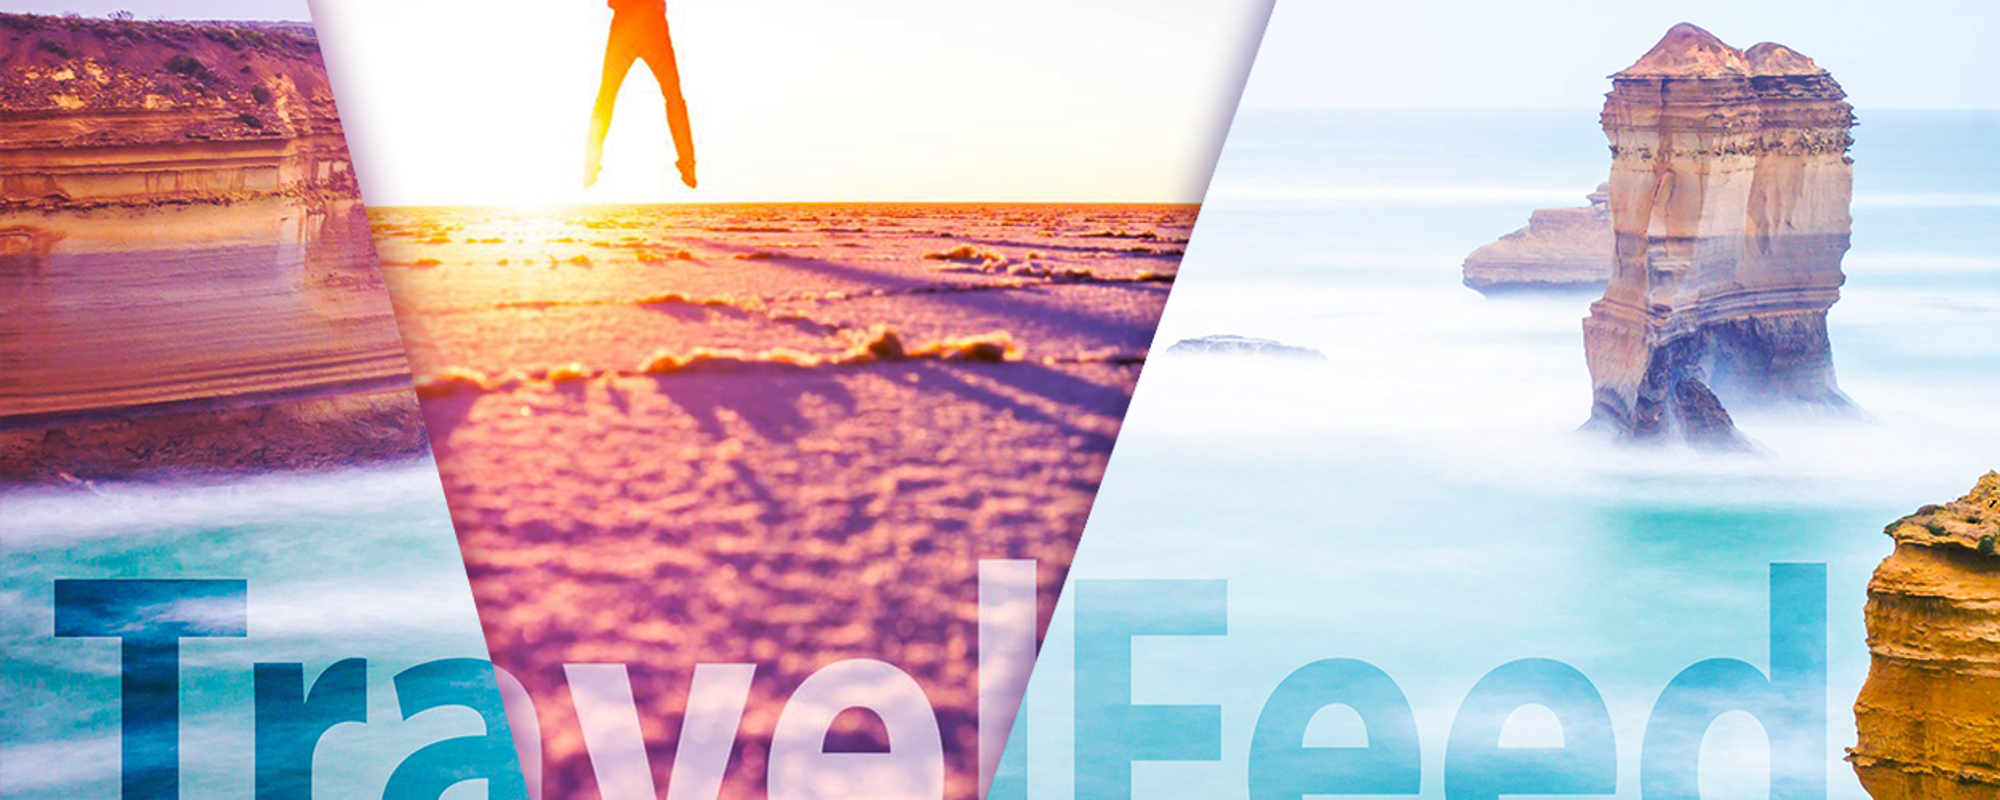 #pl-travelfeed - nowy tag podróżniczy i wprowadzenie do TravelFeed